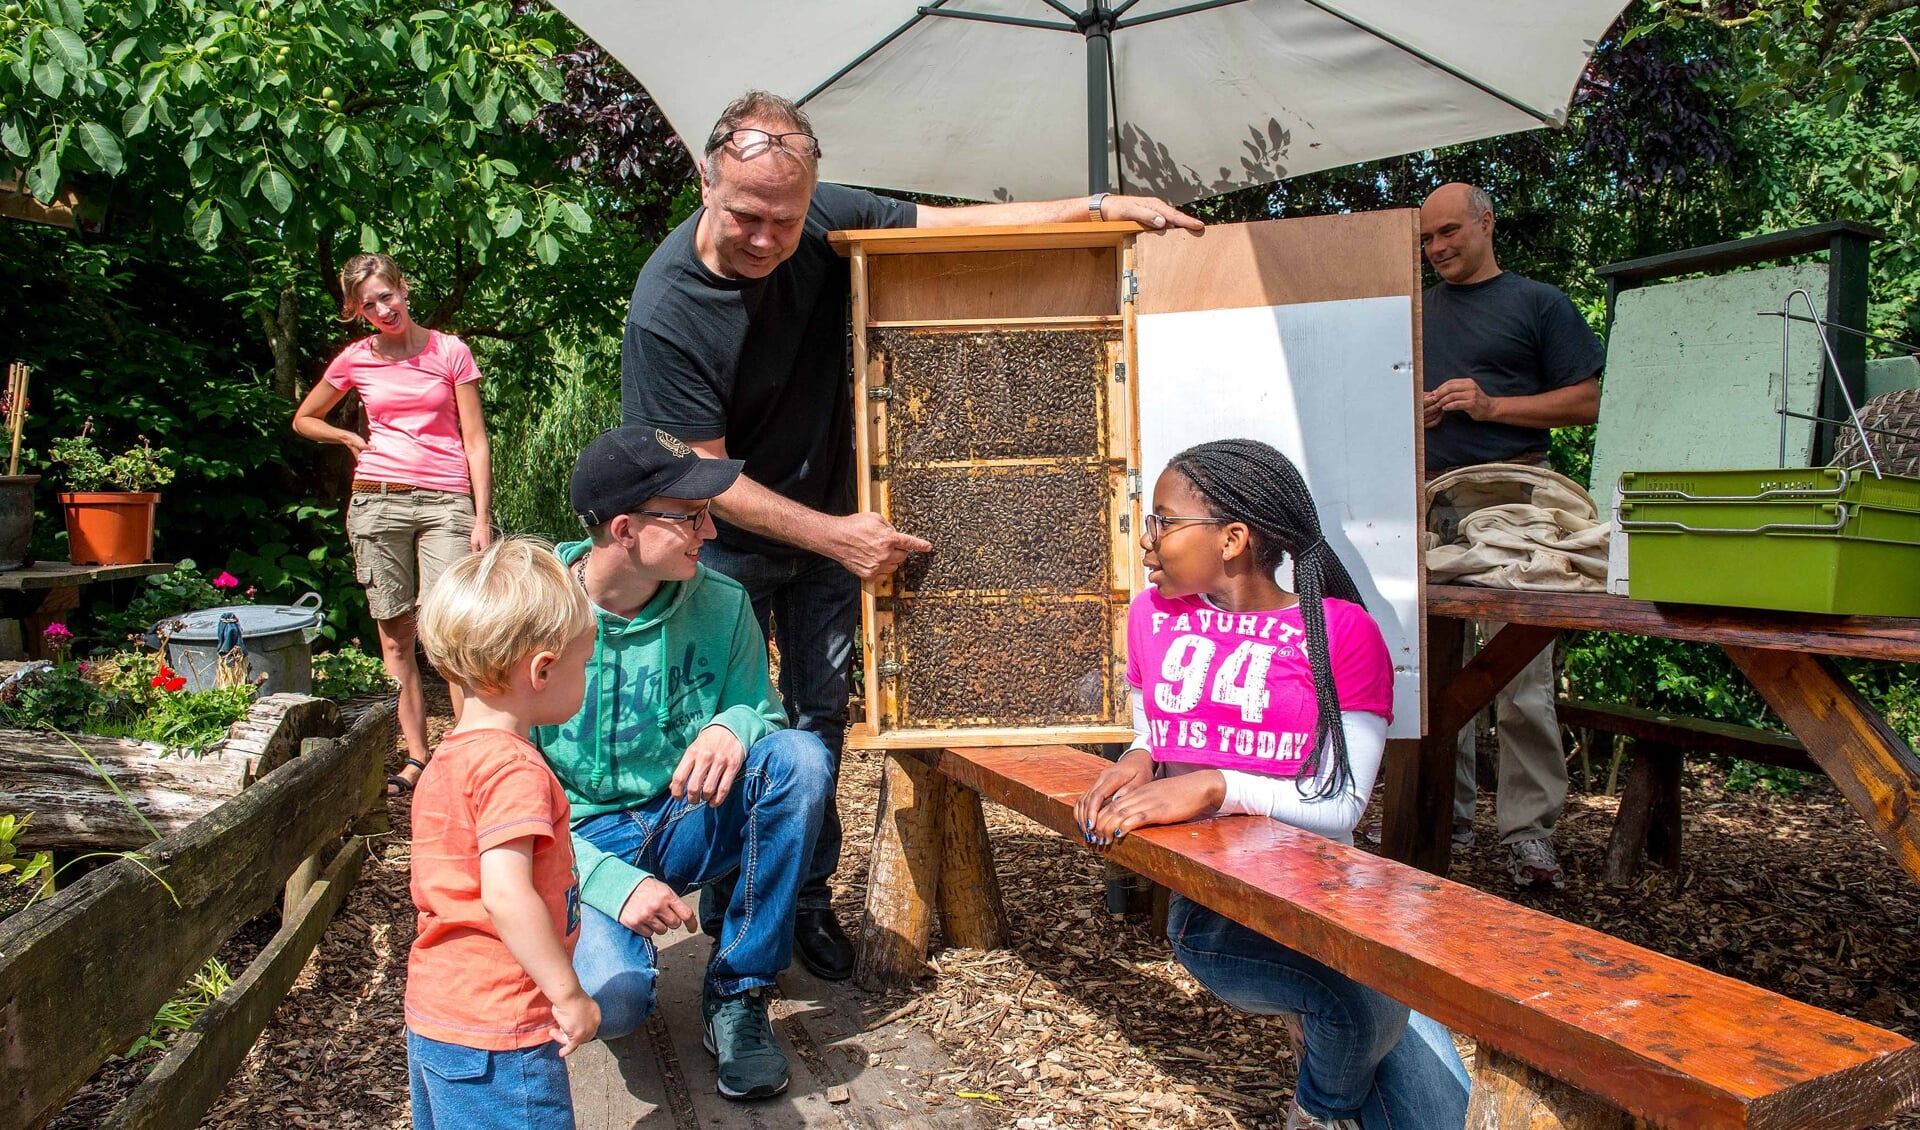 Kom alles te weten over het bijenleven tijdens de open imkerijdagen.